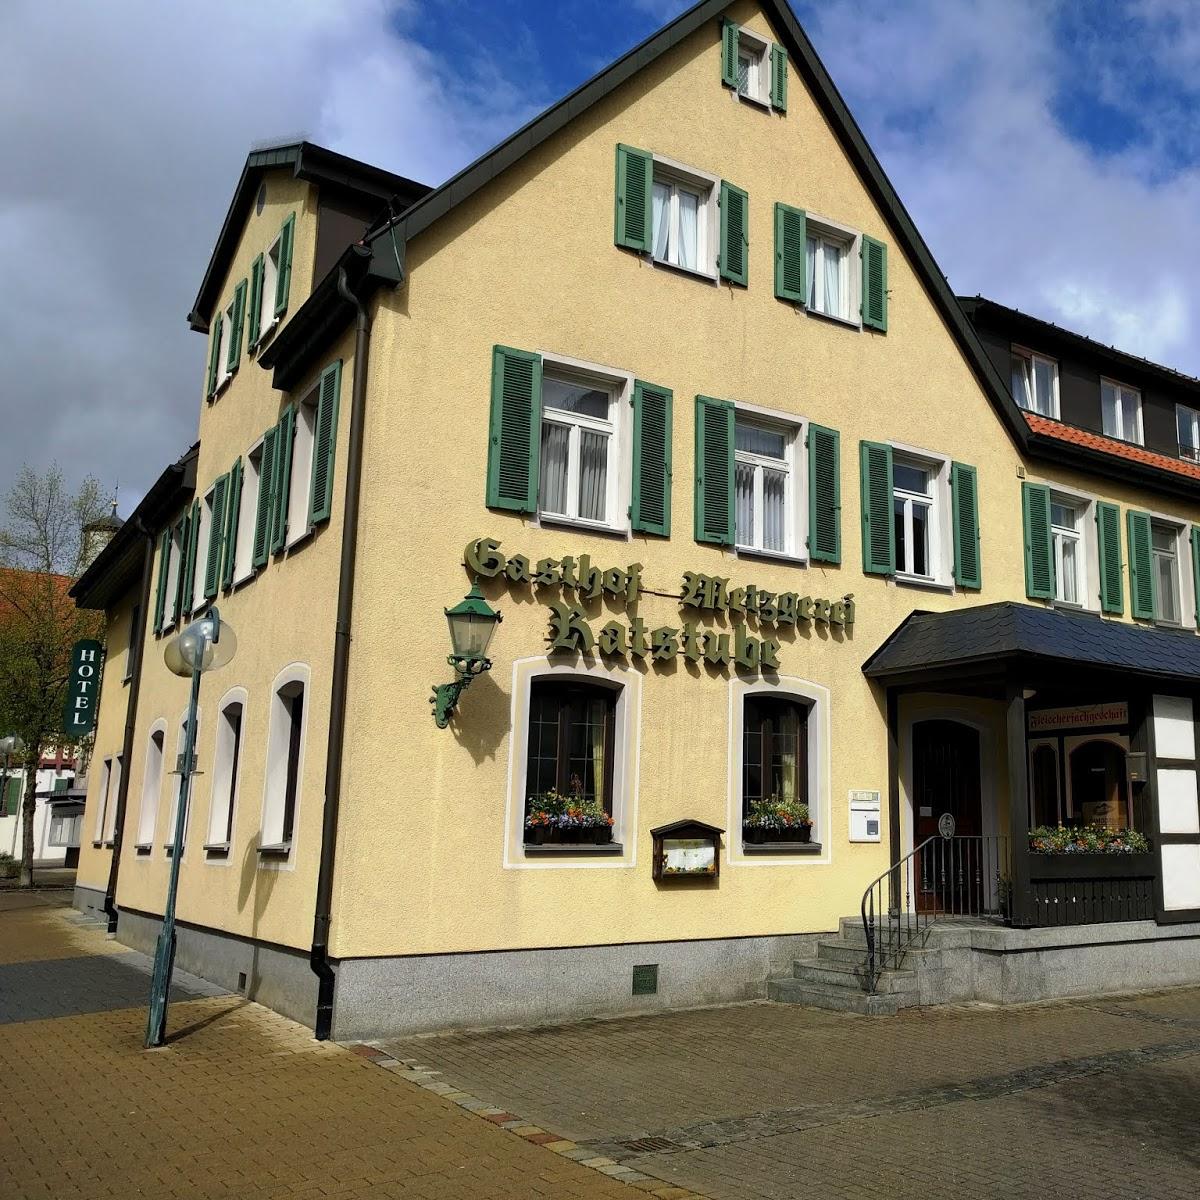 Restaurant "Gaststätte Ratstube" in Laichingen